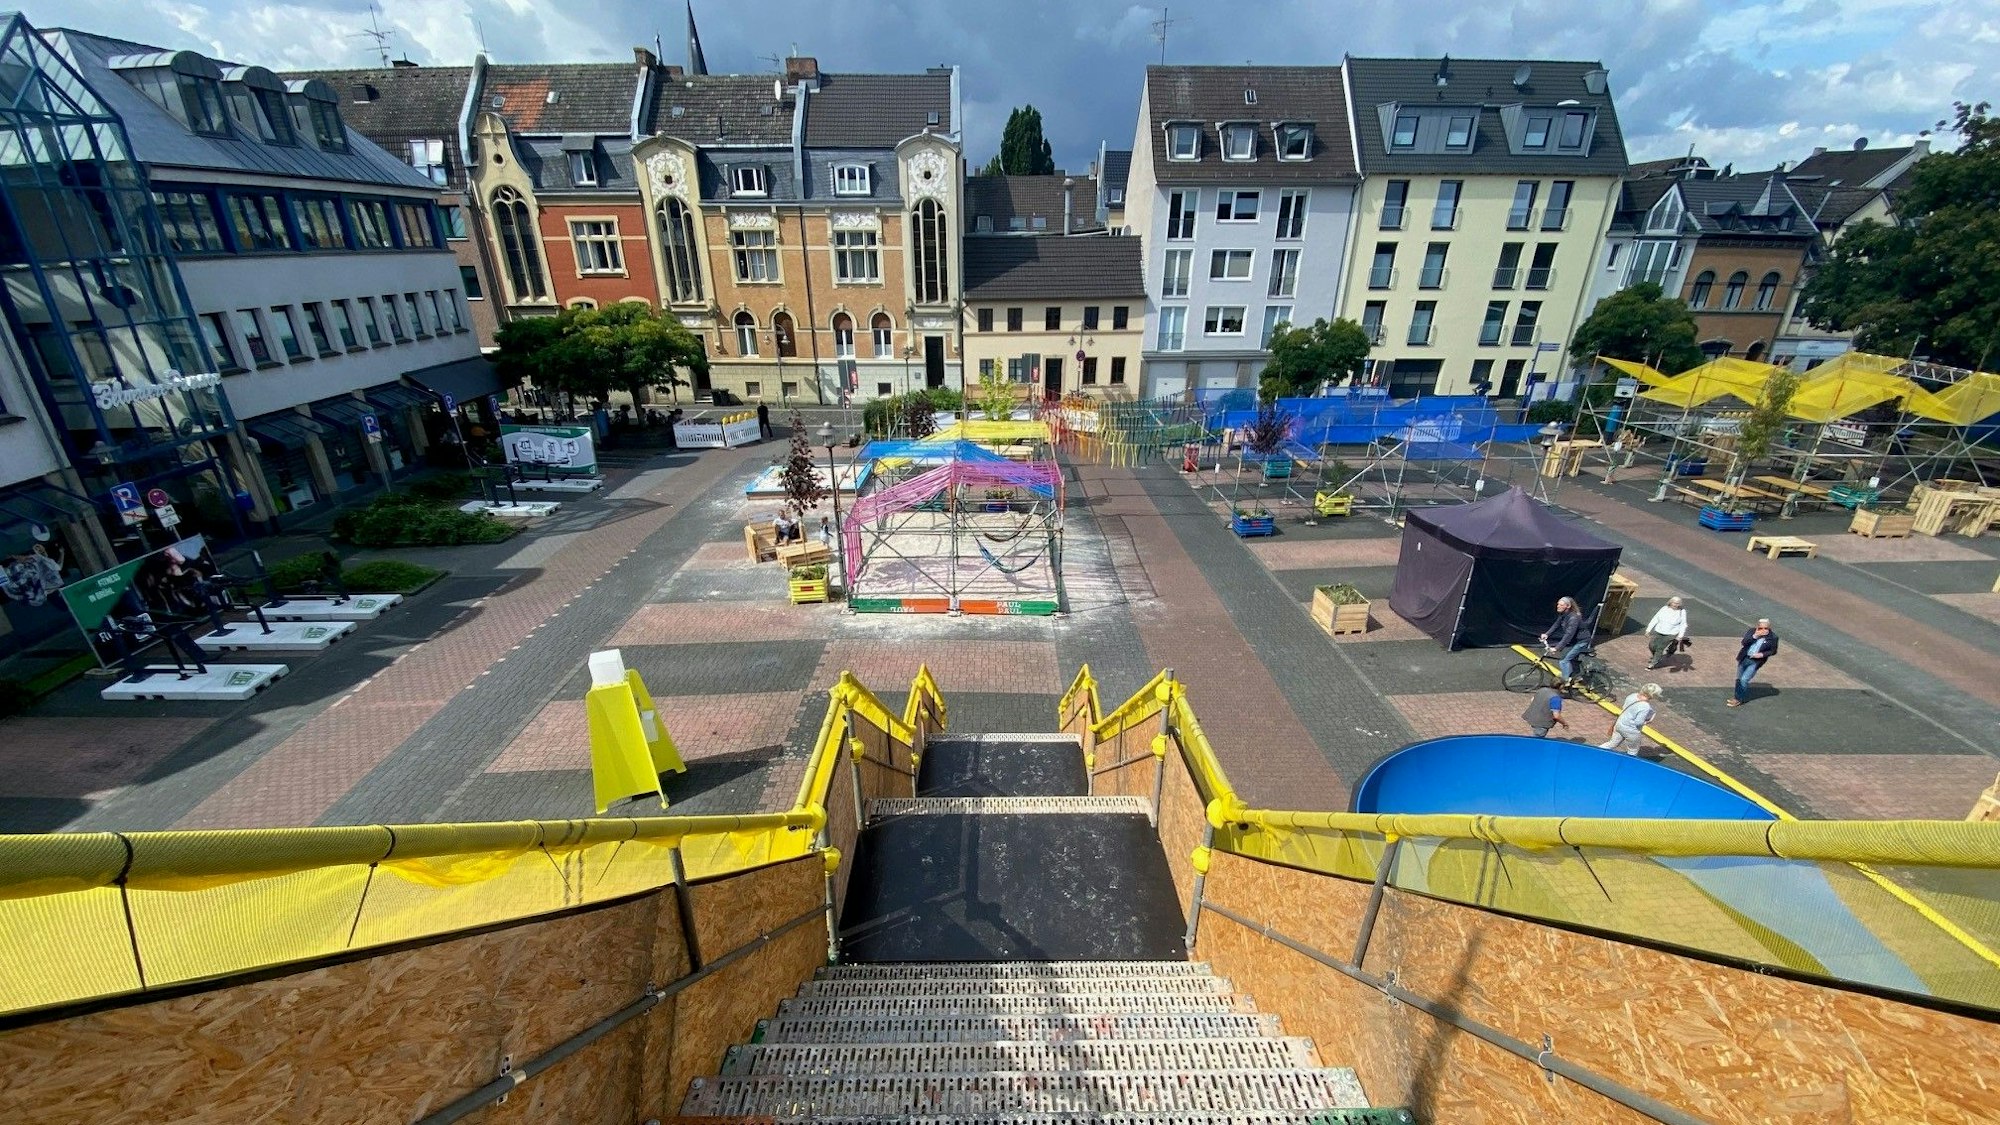 Das Bild zeigt den Belvedere-Platz aufgenommen von einer dort aufgebauten Aussichtsplattform. Zu sehen sind Sitzgelegenheiten und Sportgeräte sowie die Häuser rund um den Platz.